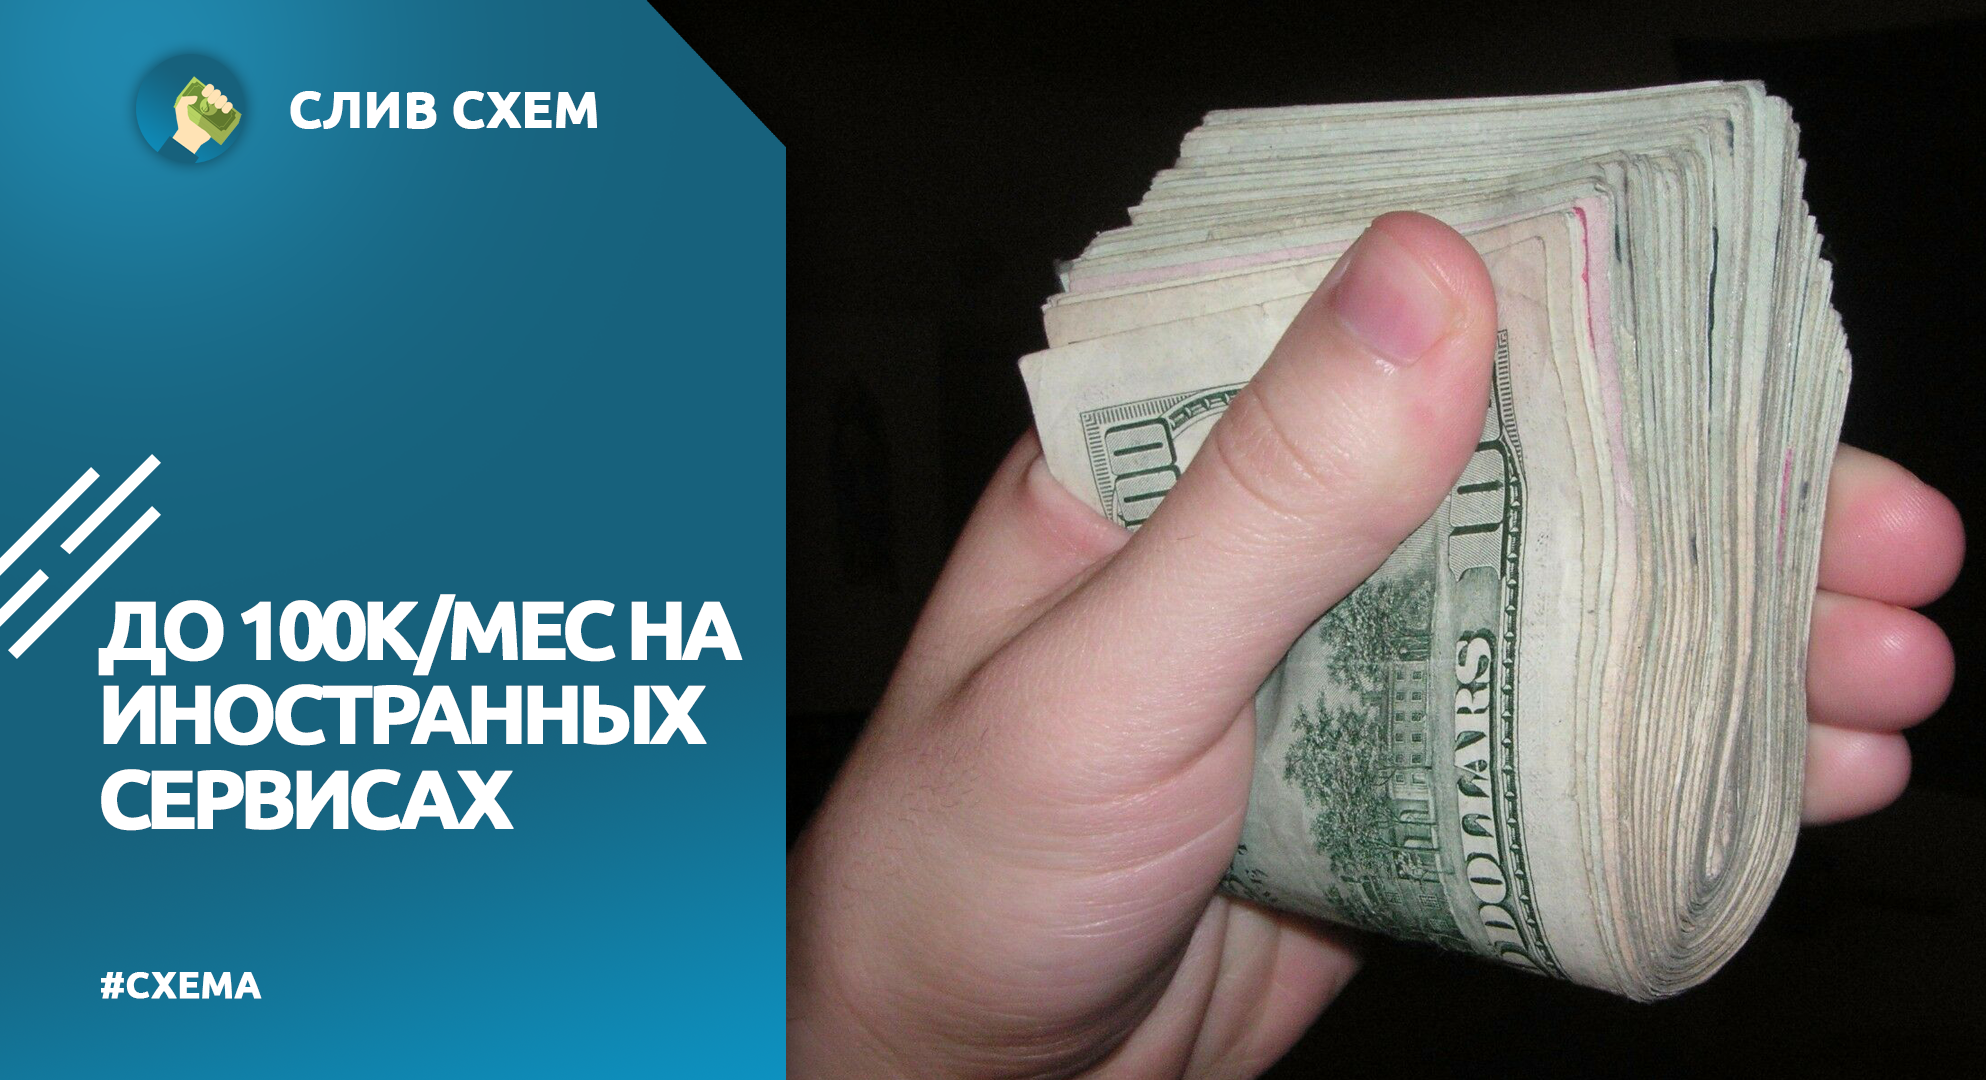 Телеграмм заработок без вложений на русском языке фото 85